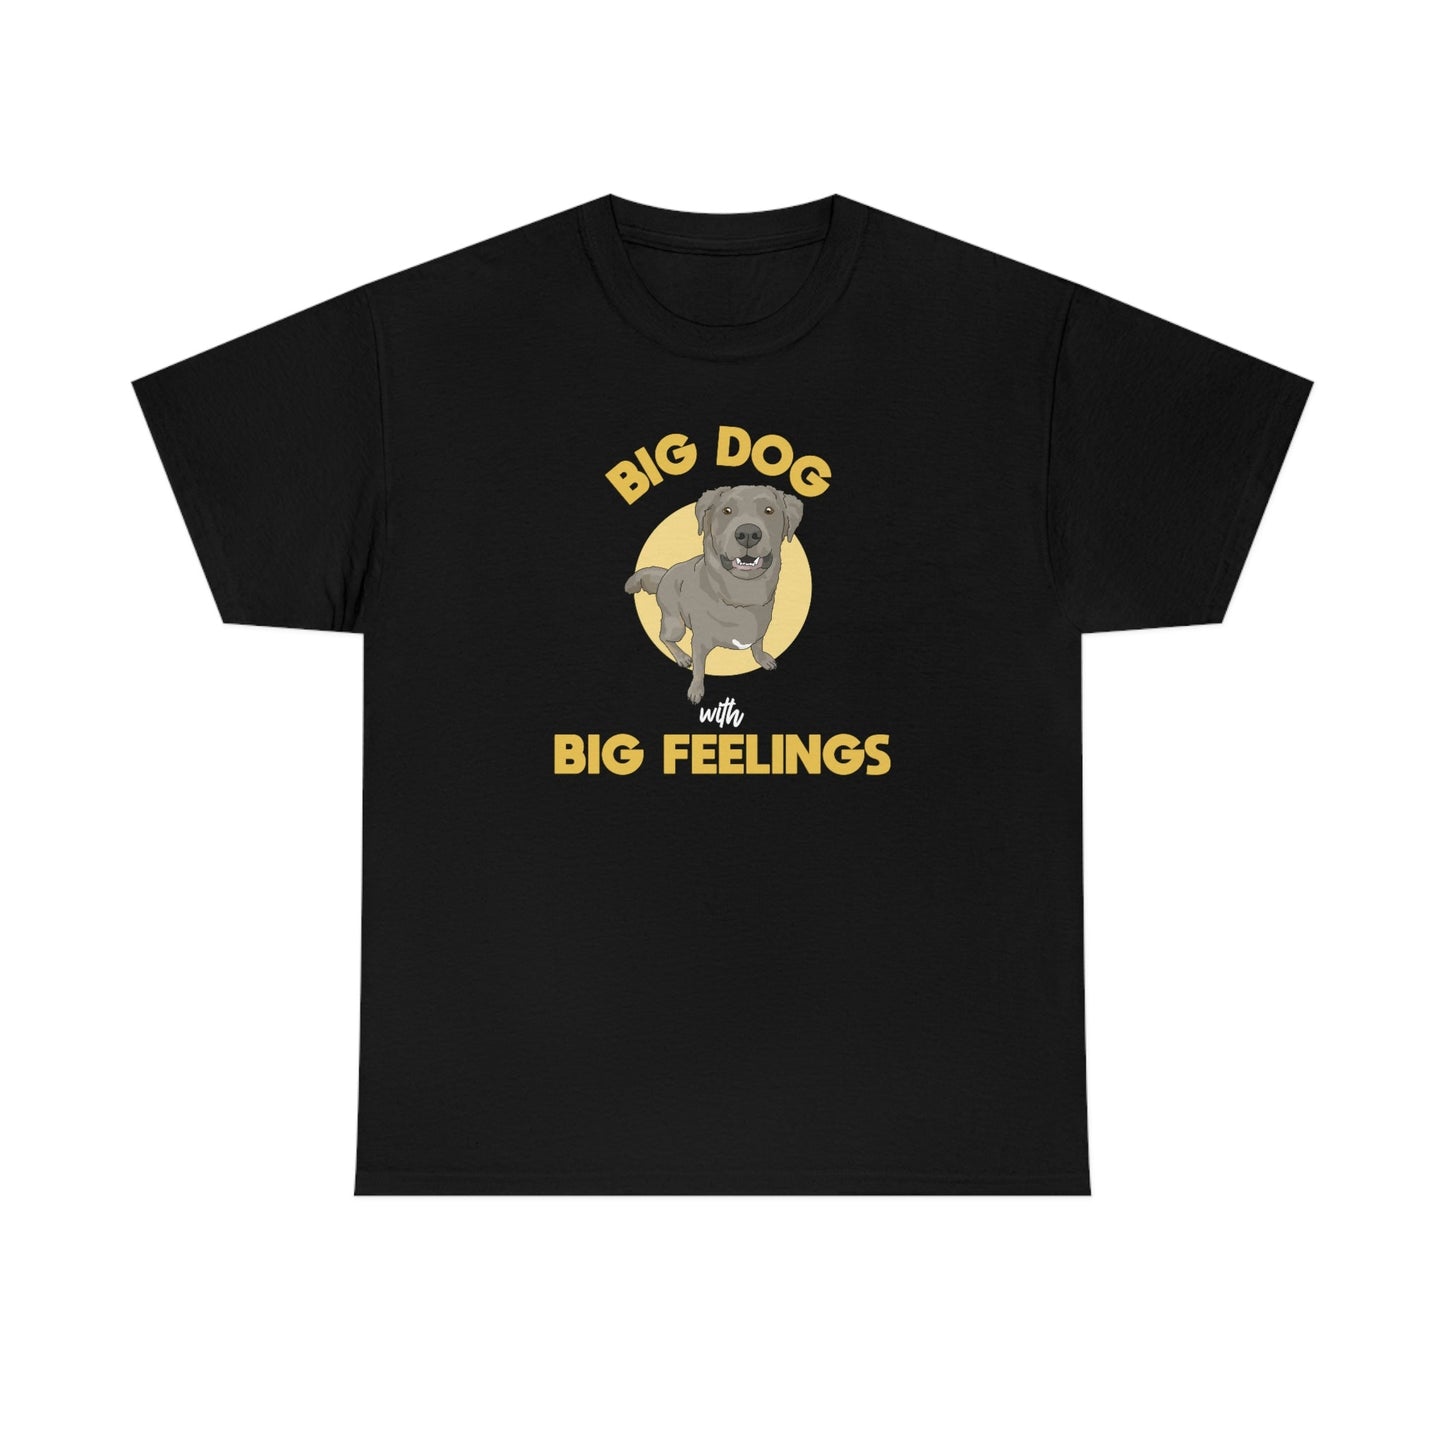 Big Dog With Big Feelings | T-shirt - Detezi Designs-32173681650869124229